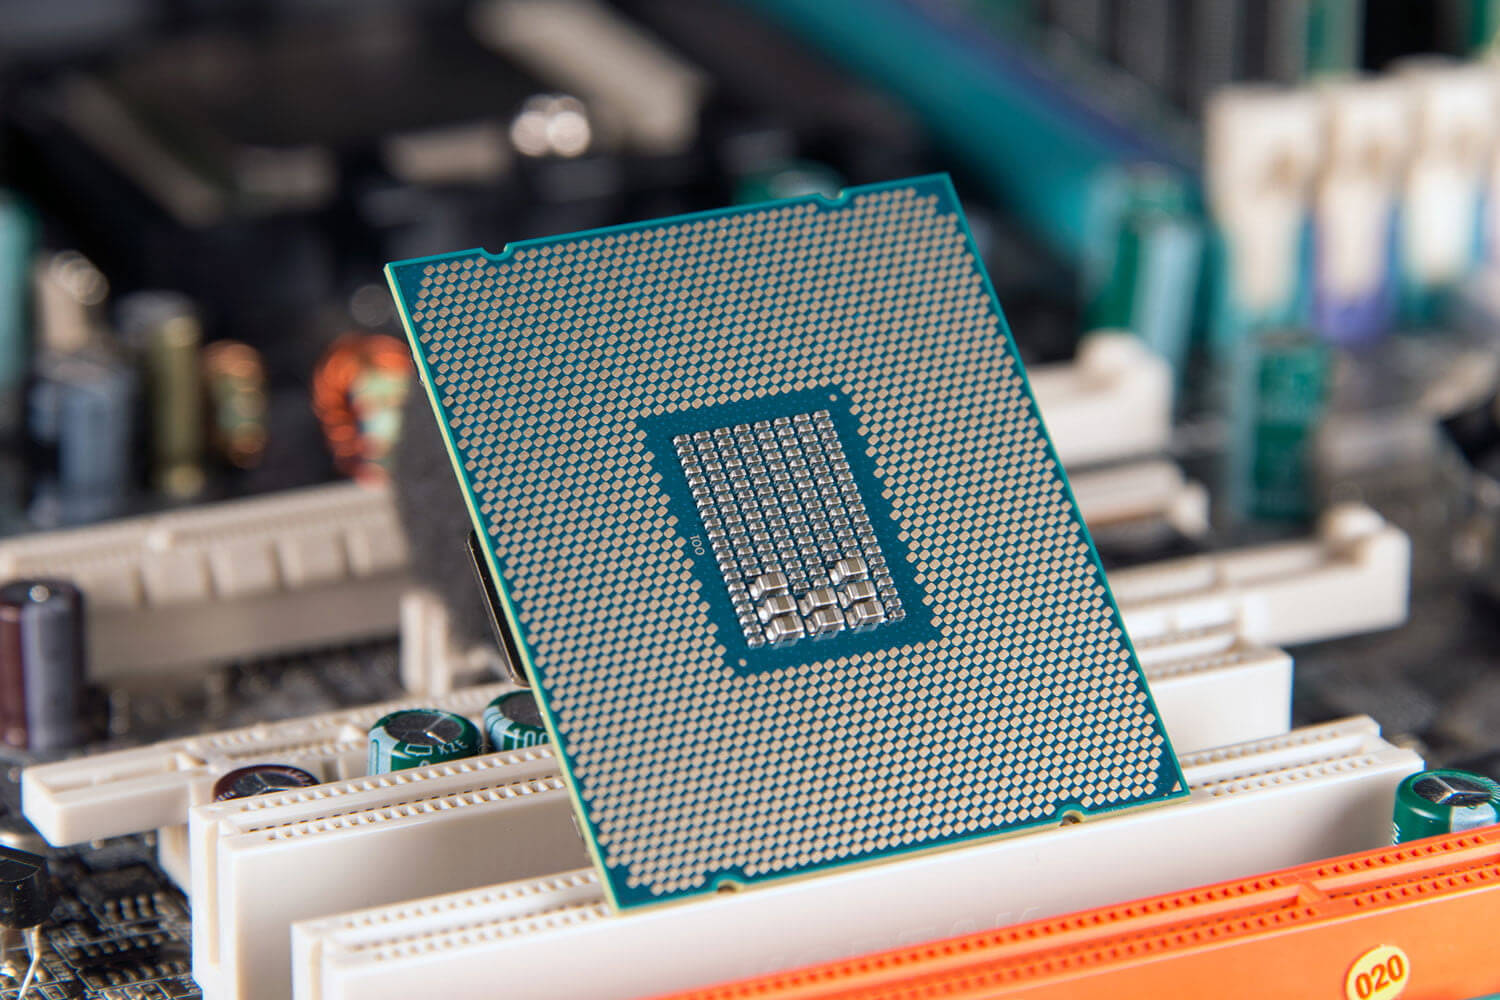 Kinukumpirma ng Intel Ang 28 Pangyayaring Insidente ng CPU, Nakalimutan na Nabanggit ang Overclocking Sa Kaguluhan